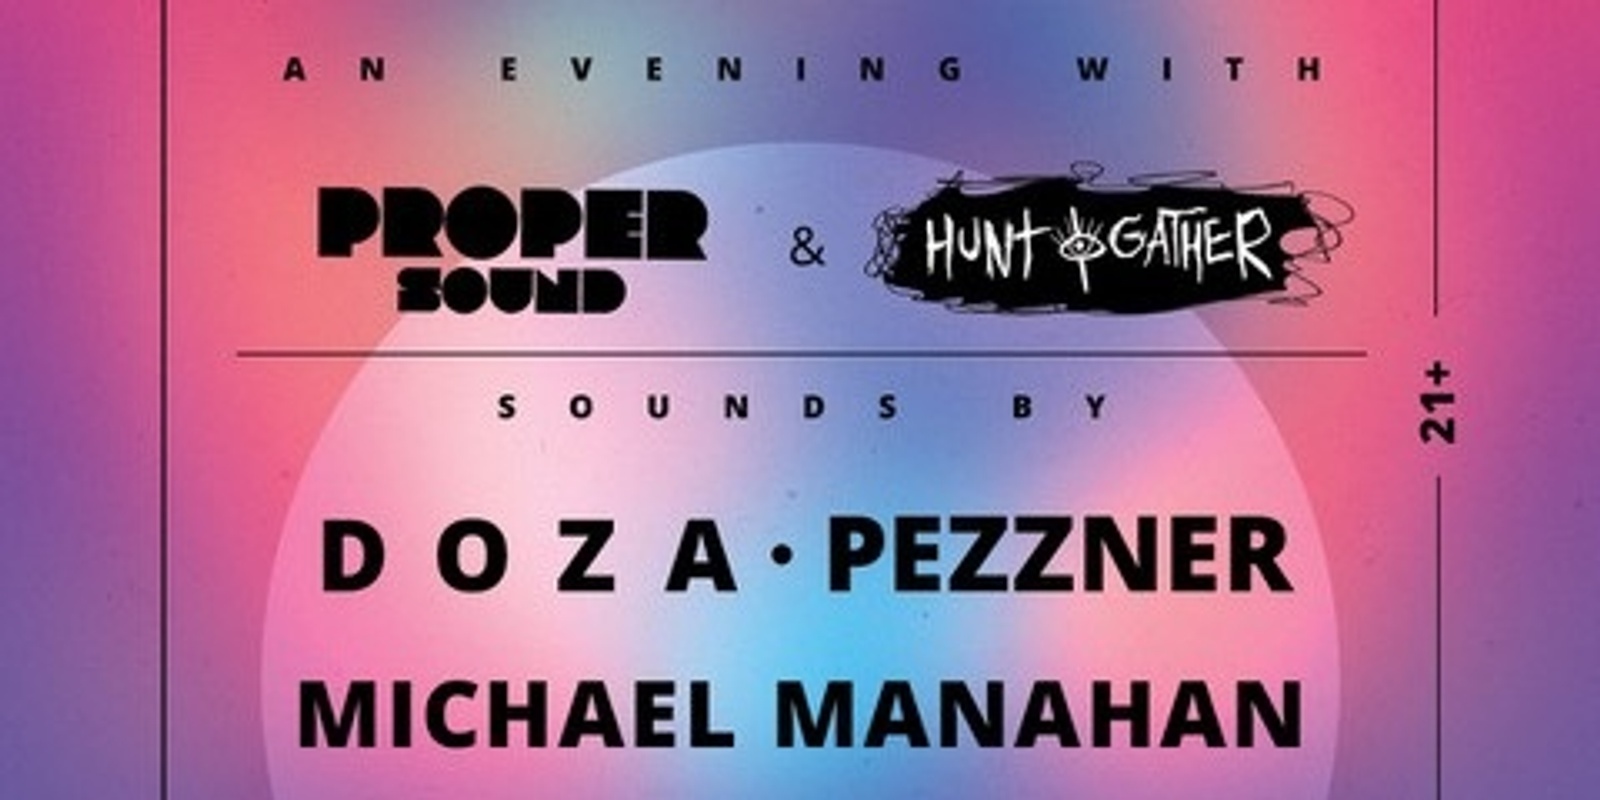 Banner image for Proper Sound Ft. Pezzner, Doza, Manahan (Hunt & Gather)